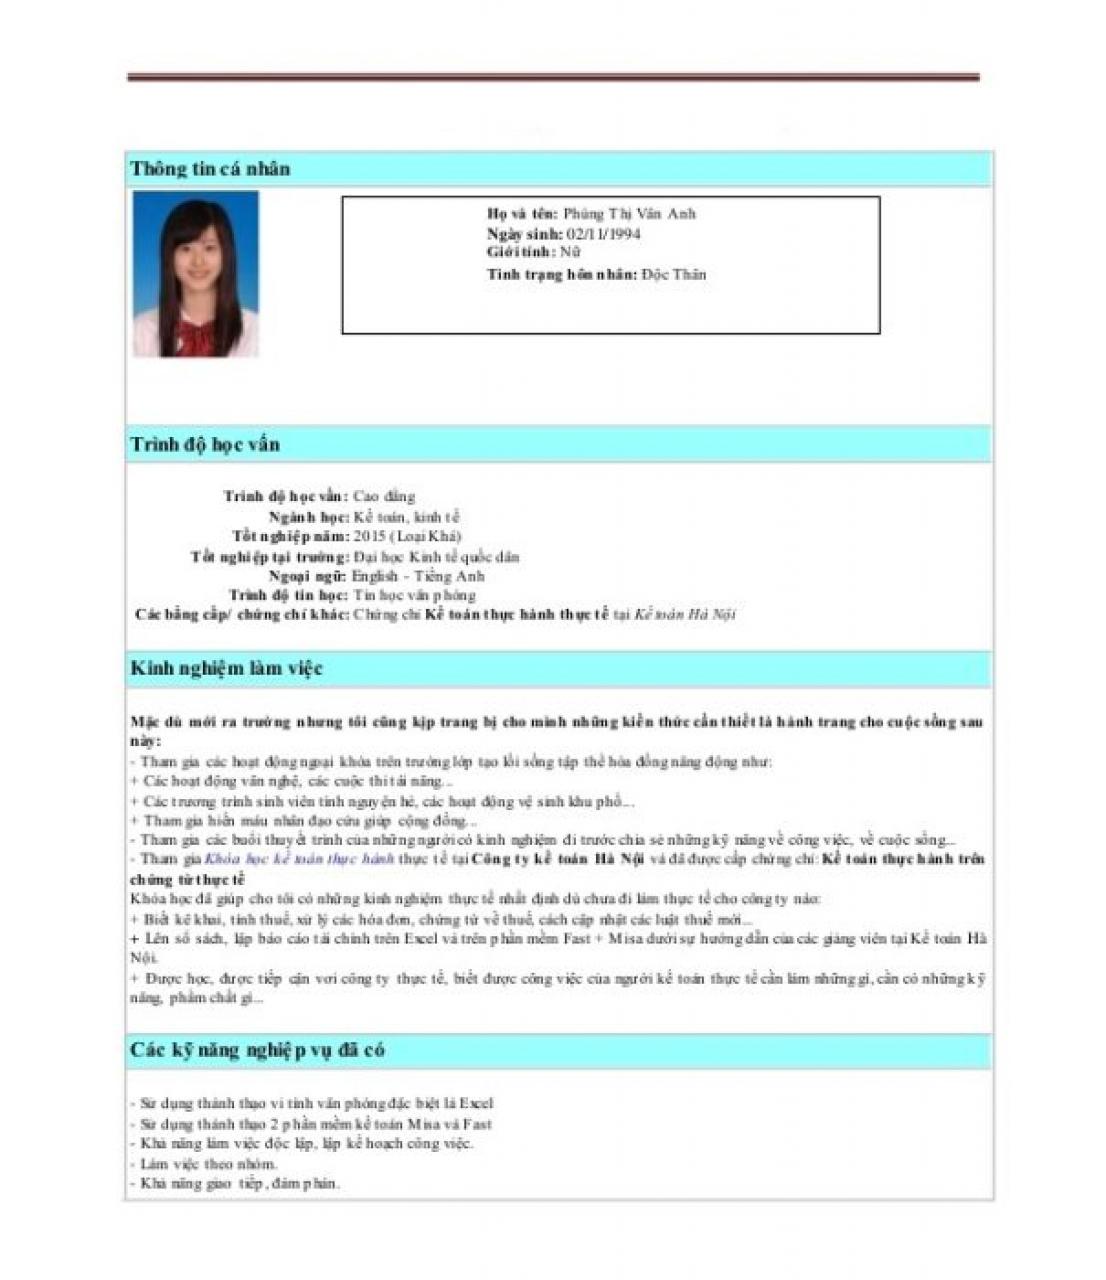 Mẫu CV xin việc bằng tiếng Việt chuẩn dành cho sinh viên mới tốt nghiệp